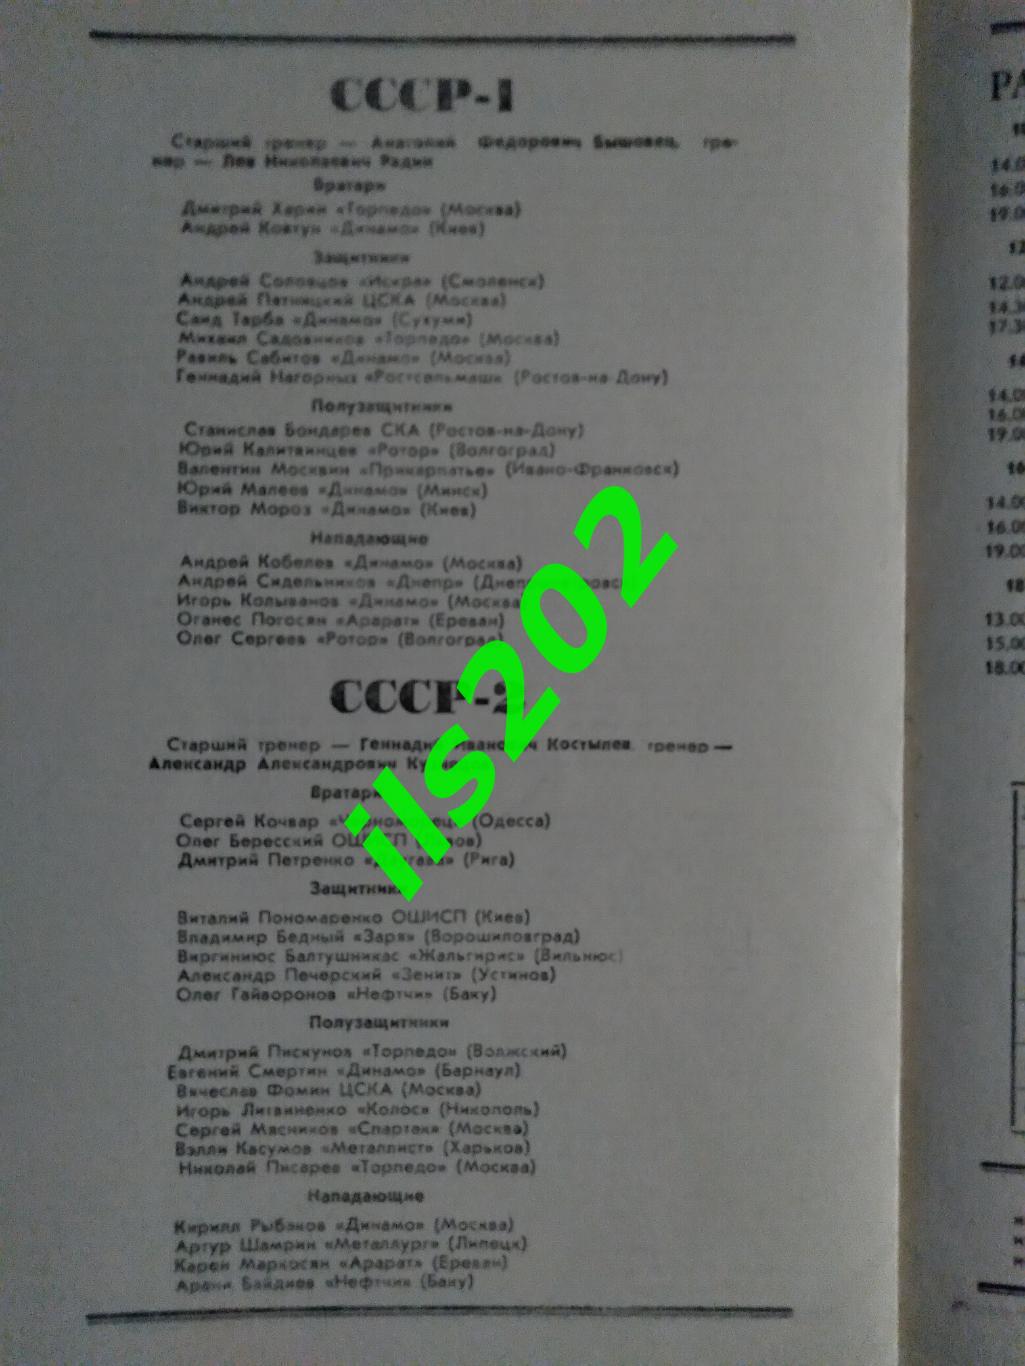 турнир памяти В.А. Гранаткина 1986 / сборная СССР юношеская и др. 1